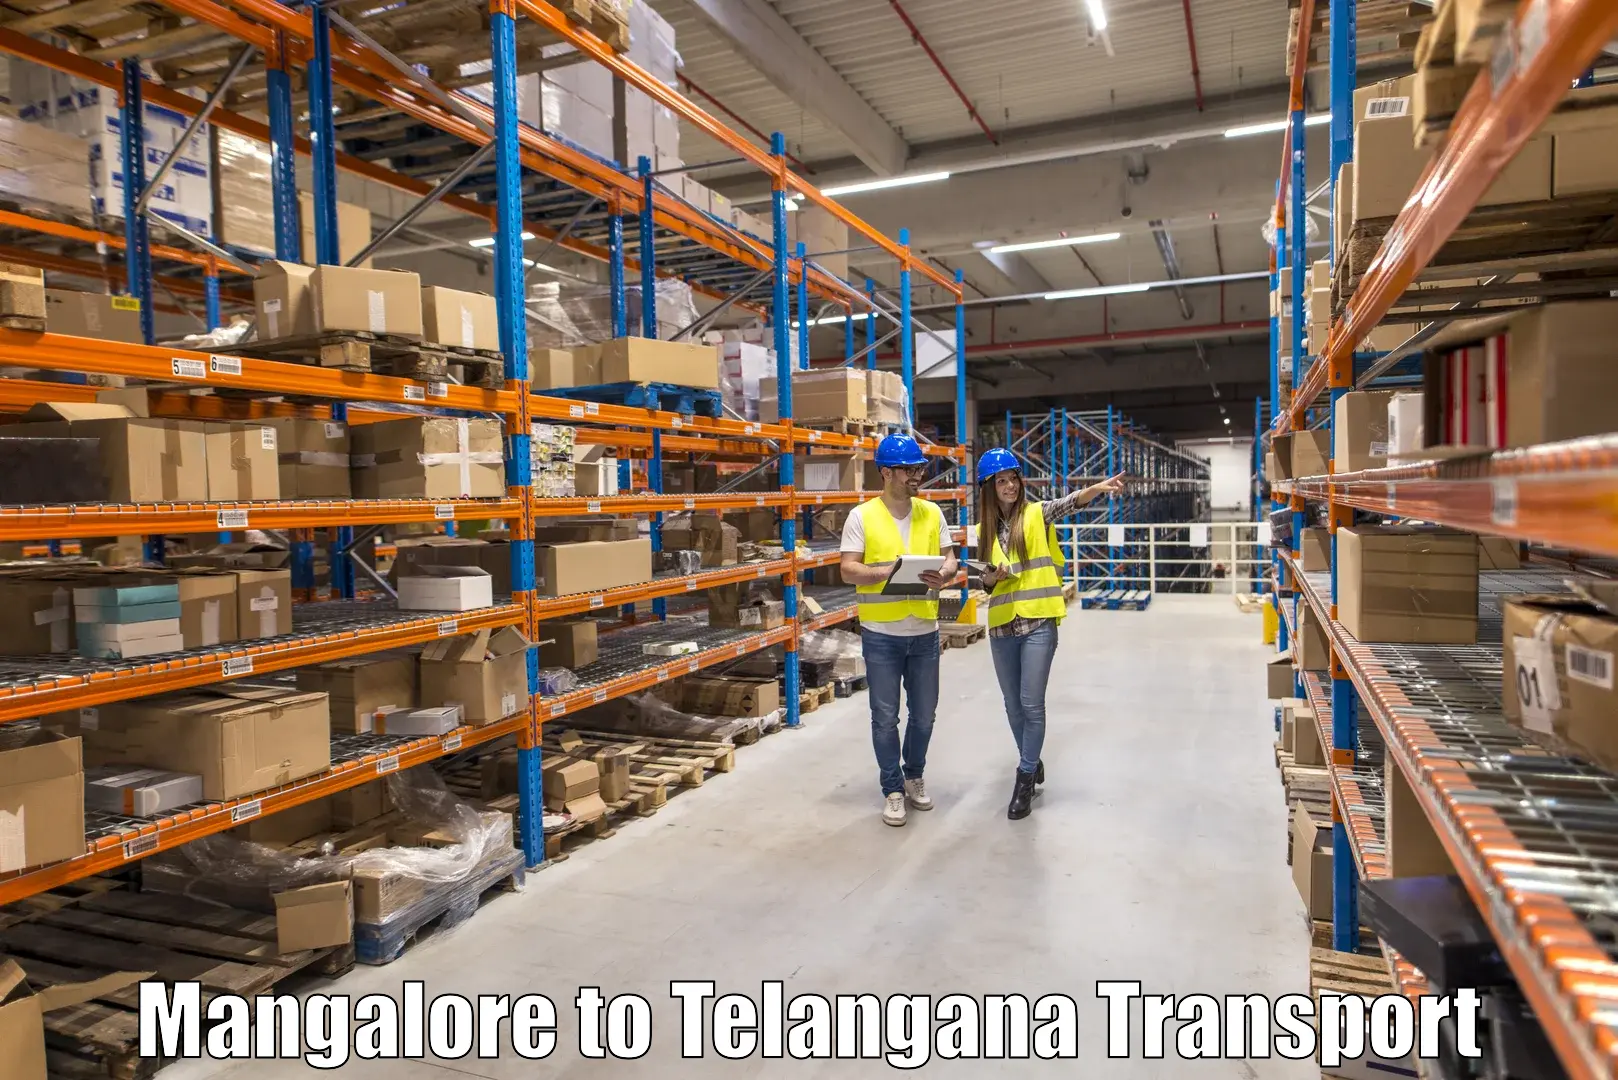 Express transport services Mangalore to Yellandu